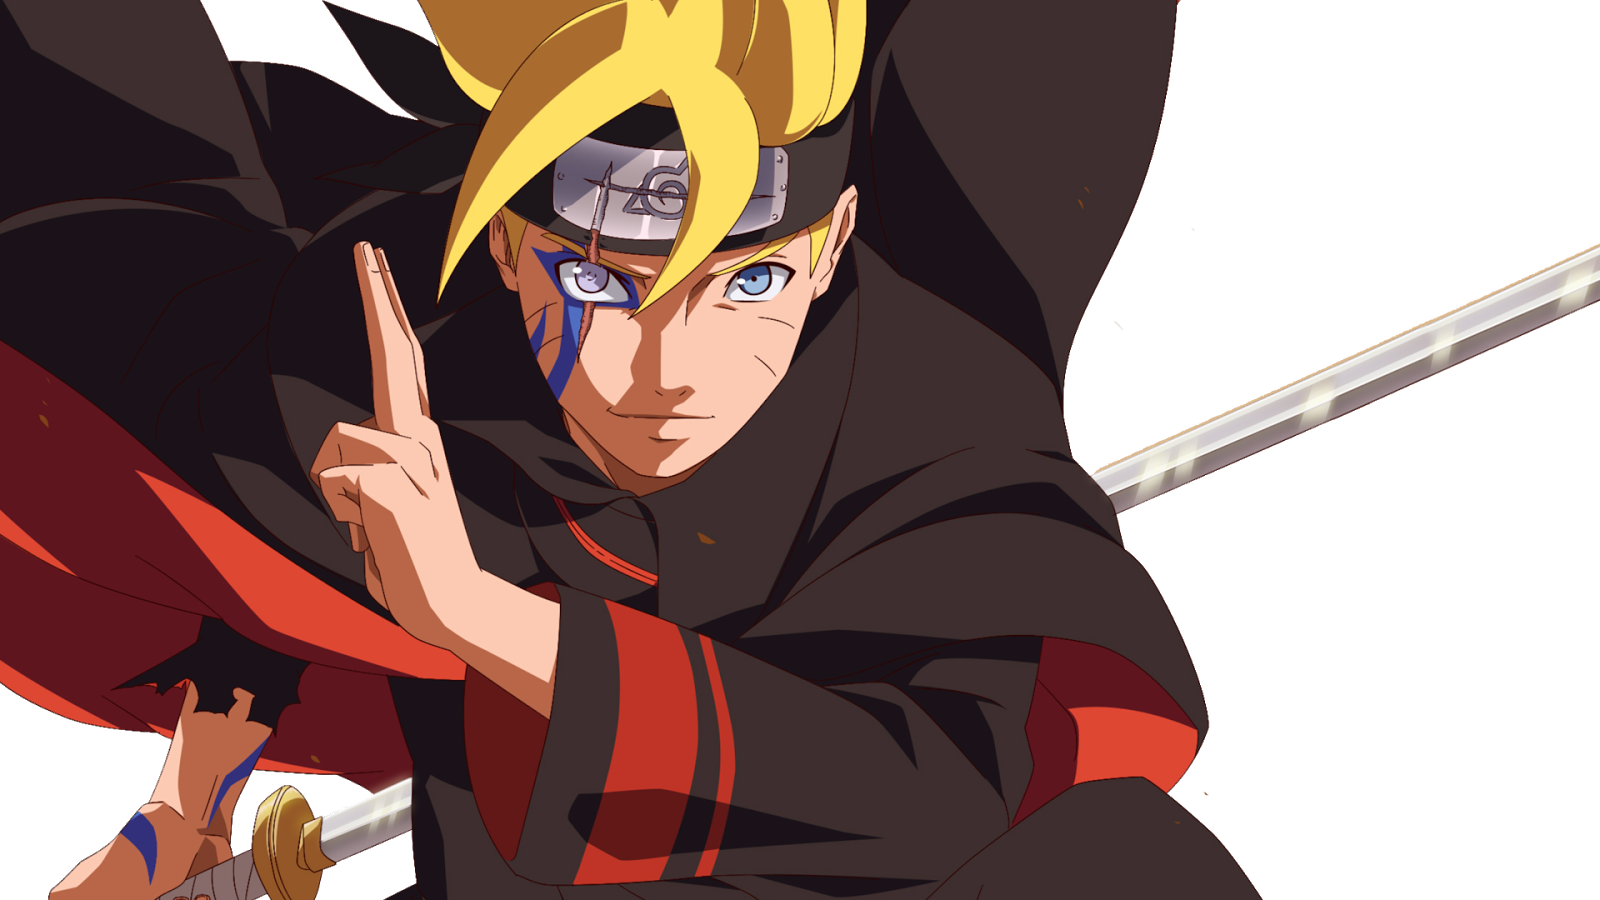 Phát minh nhẫn thuật: Điểm danh ai là fan của Naruto! Bạn đã bao giờ nghe về phát minh nhẫn thuật mới nhất trong thế giới anime chưa? Chắc chắn bạn sẽ bất ngờ và thích thú khi biết đến nó!